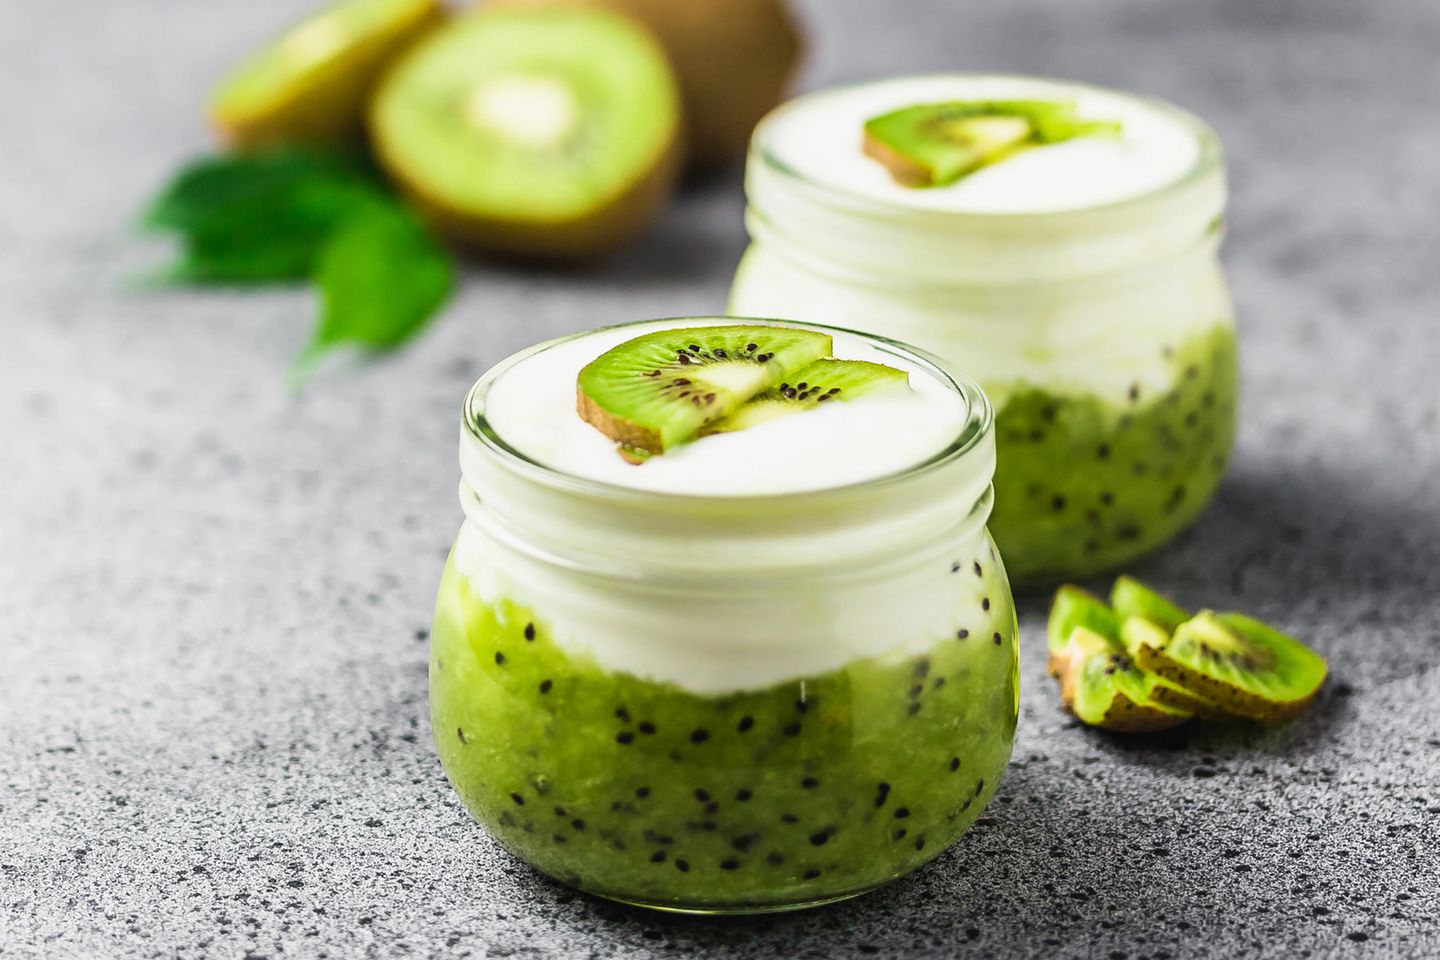 Diese Lebensmittel sollten Sie nicht miteinander kombinieren: Joghurt mit Kiwi